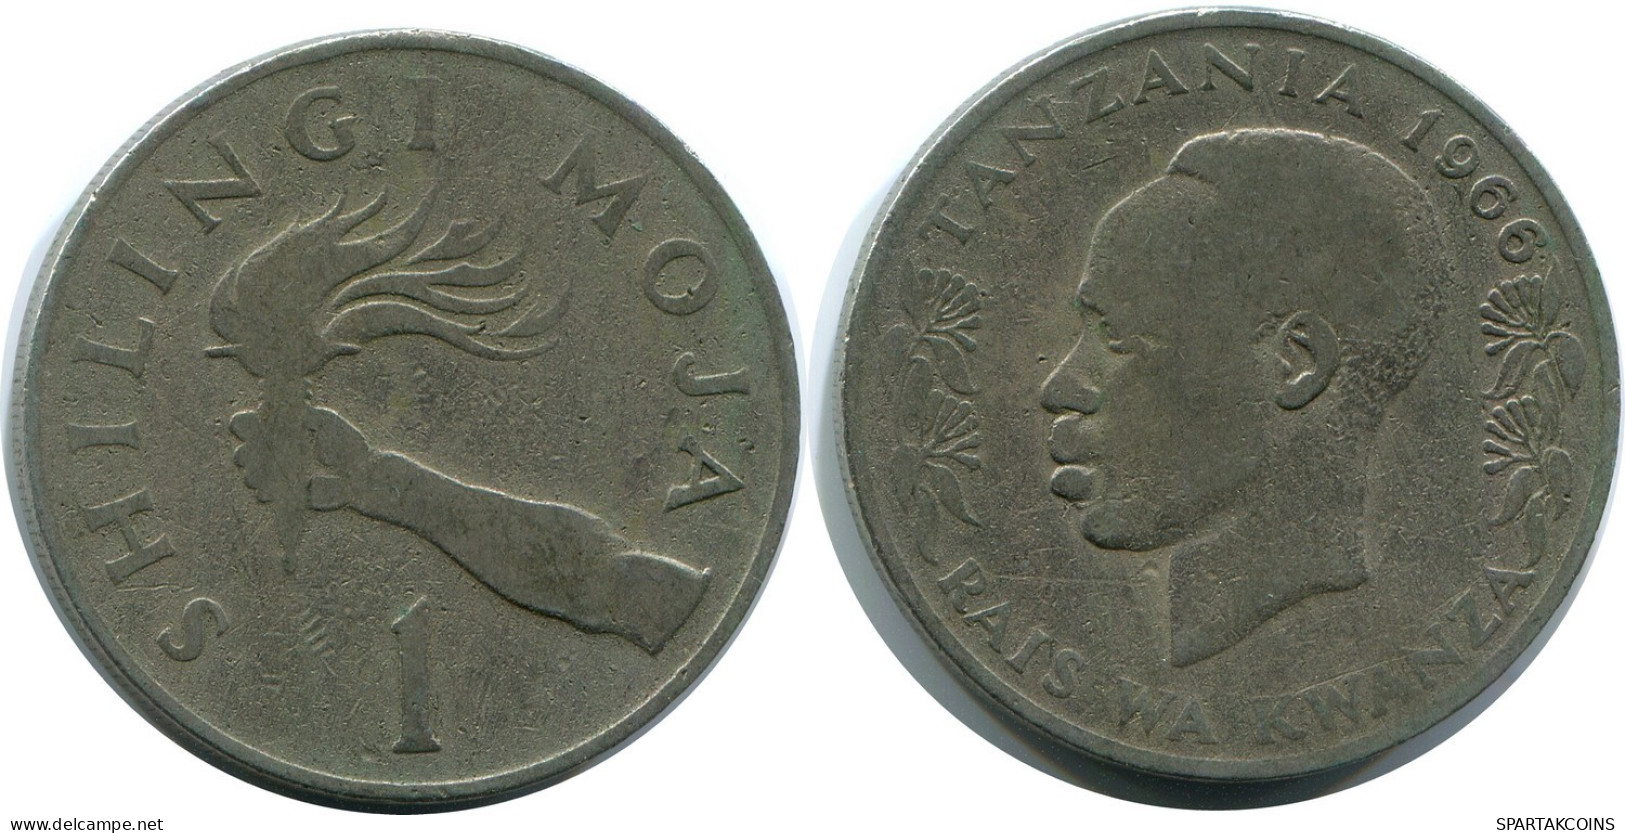 1 SHILLING 1966 TANZANIA Moneda #AR922.E.A - Tanzanie